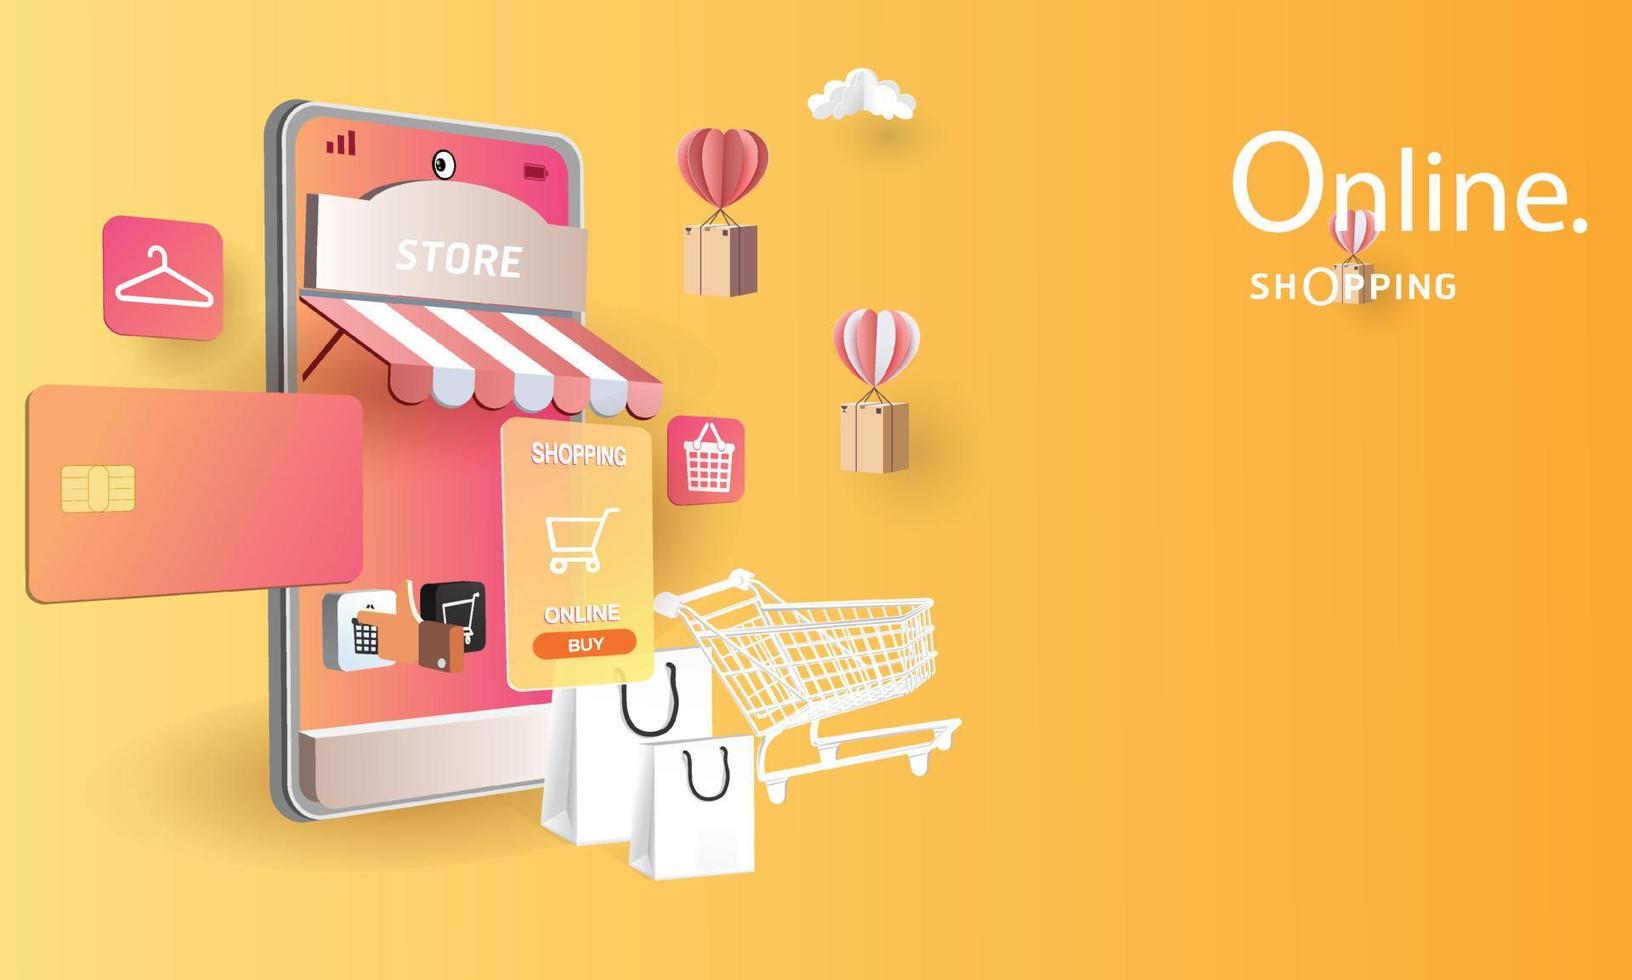 Compras de arte en papel en línea en teléfonos inteligentes y promoción de venta de nueva compra fondo rosa para el concepto de mujeres de comercio electrónico de mercado de banner. vector